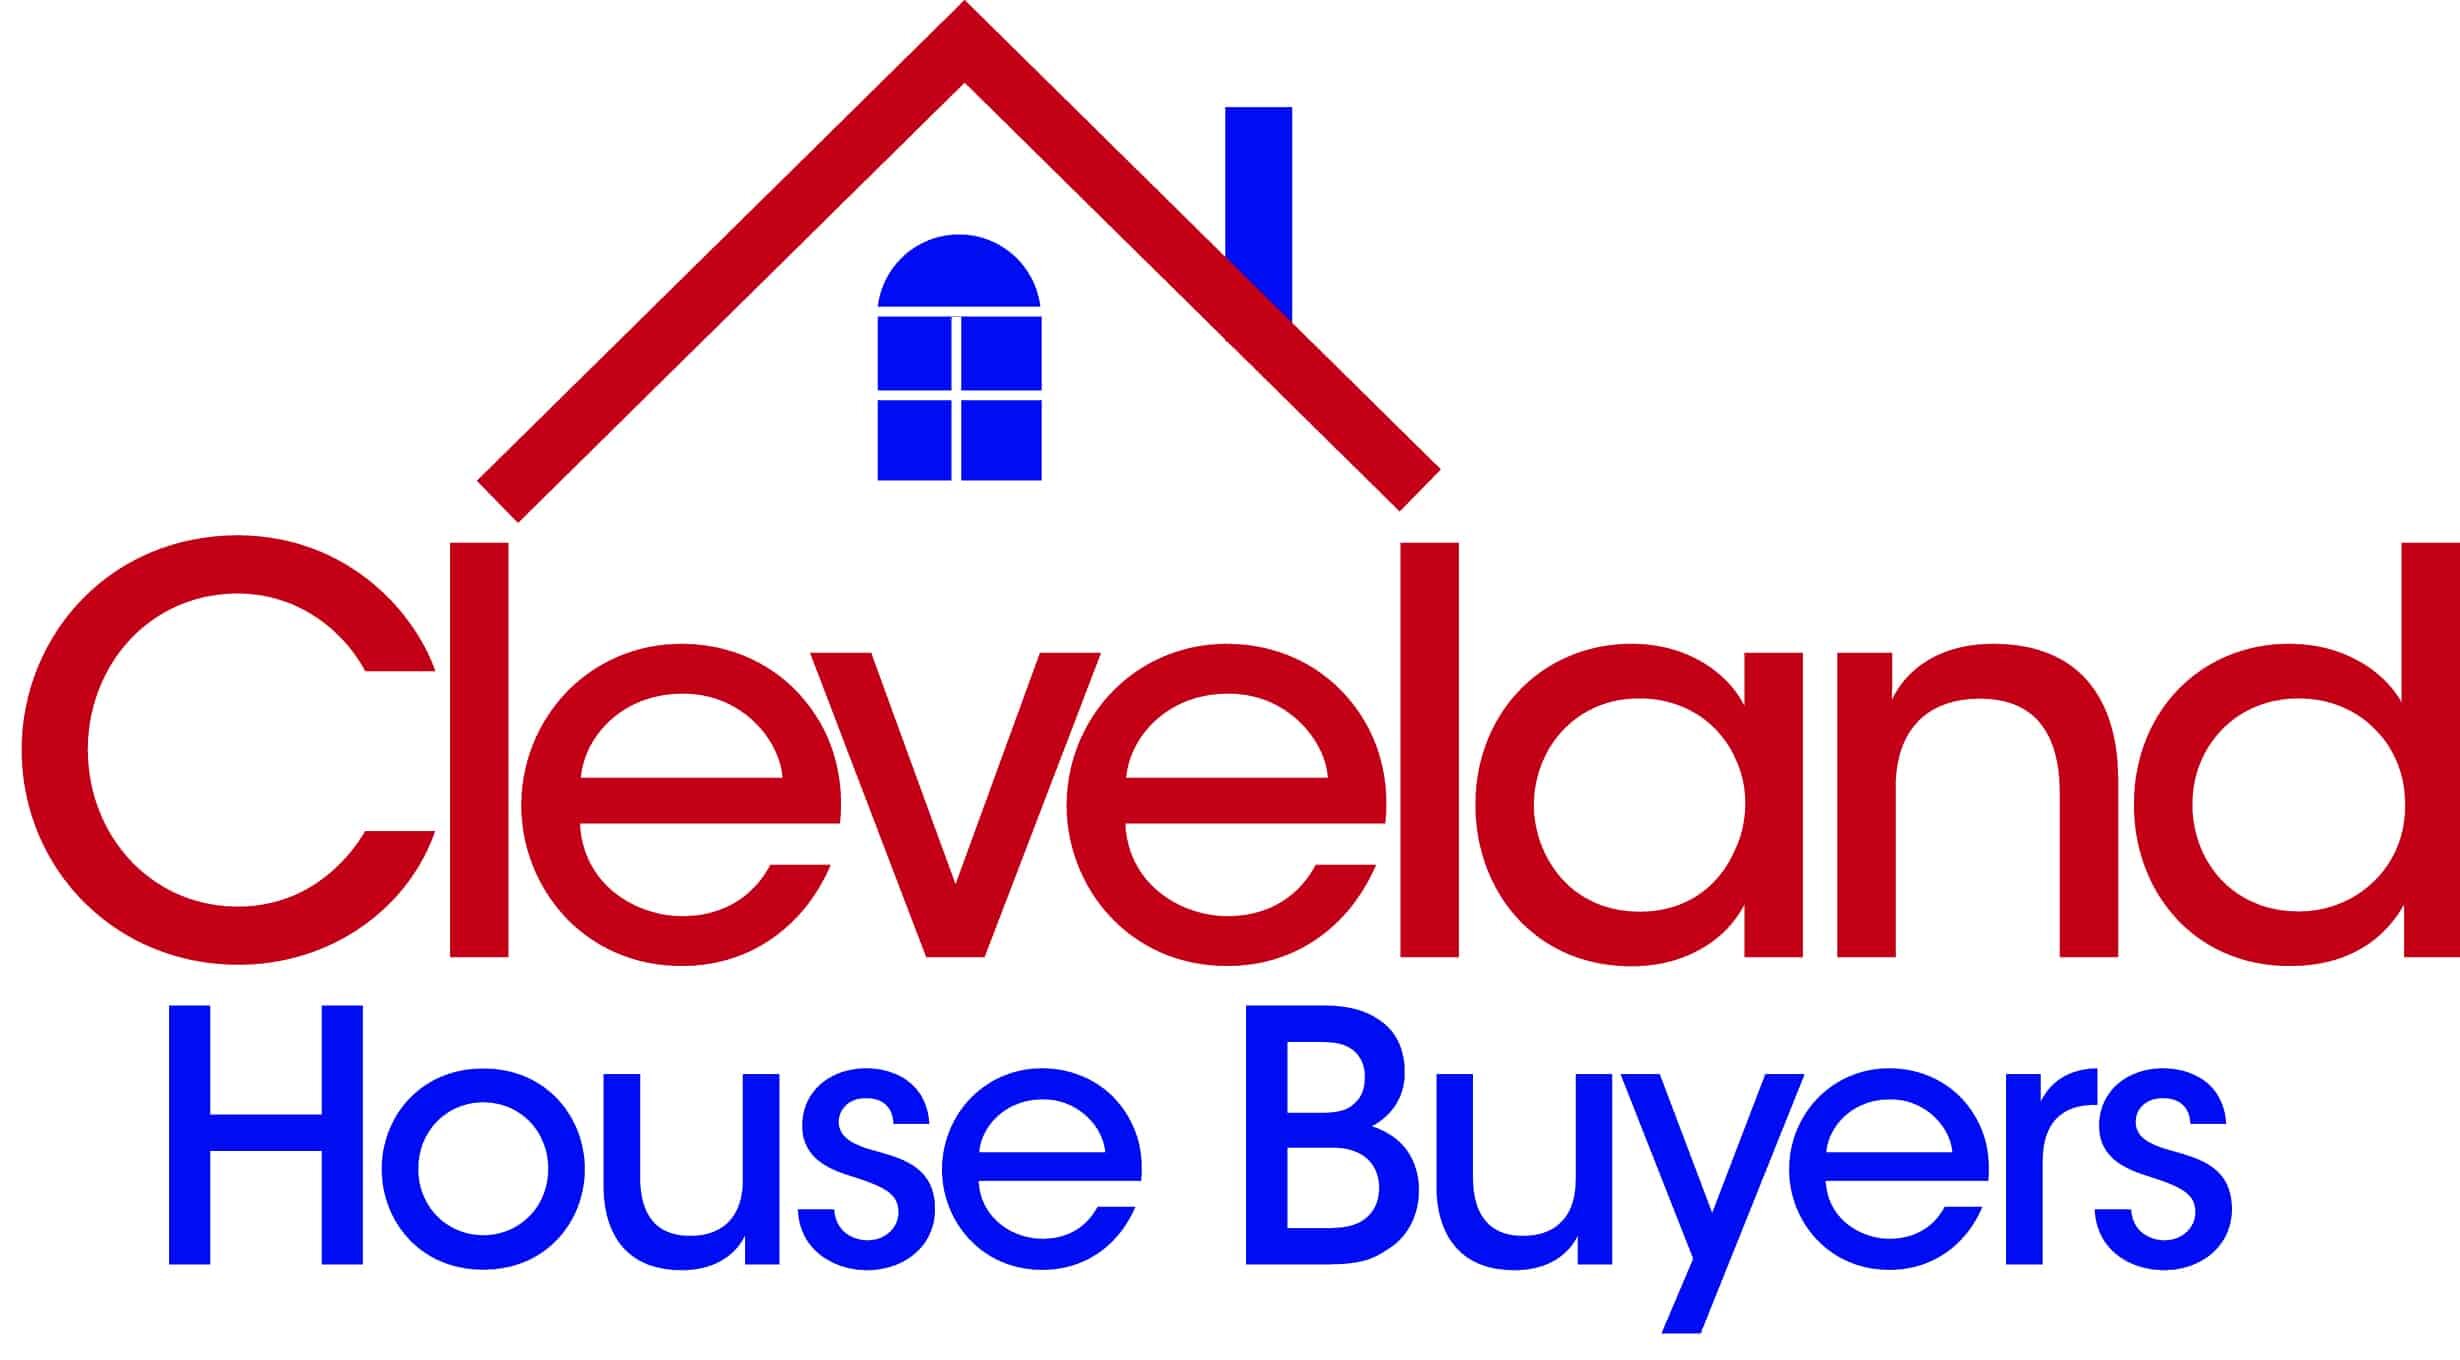 Cleveland House Buyers, LLC logo